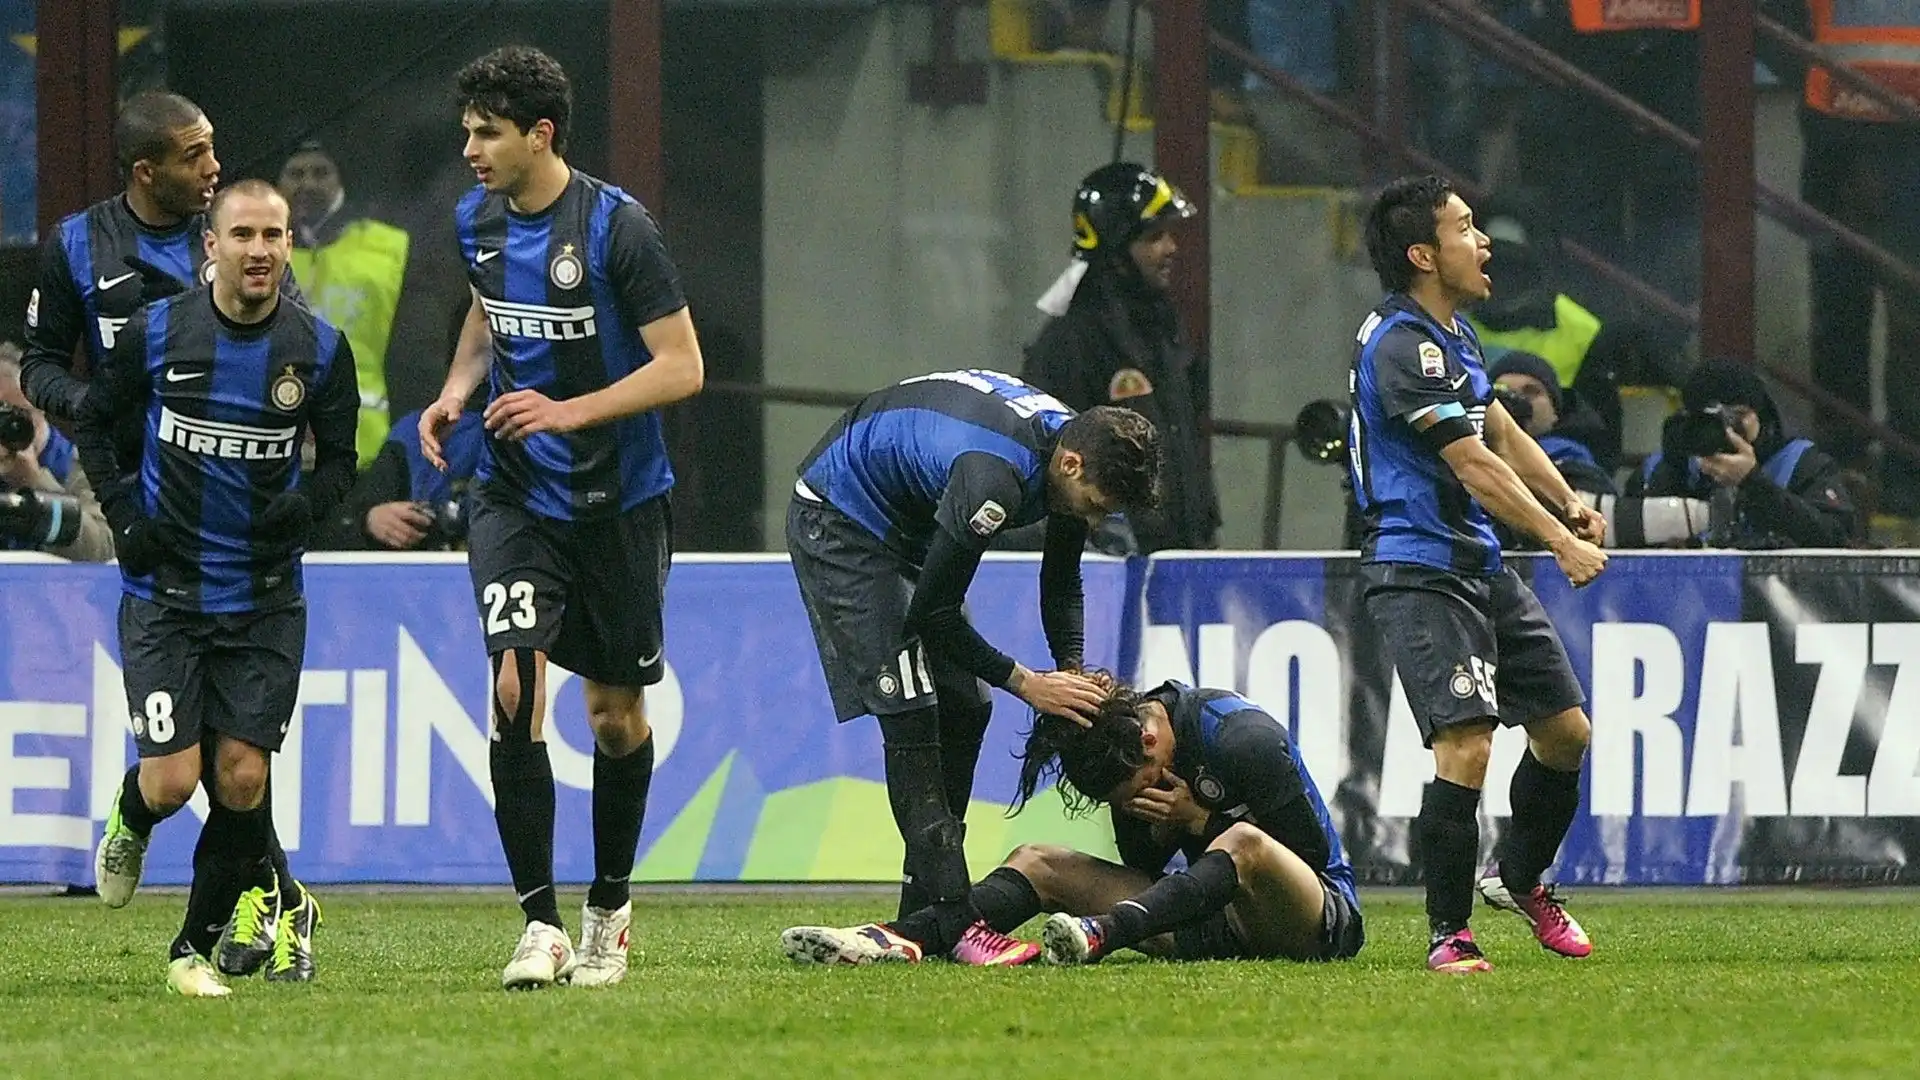 Le foto dell'ex Inter che ora gioca tra i dilettanti